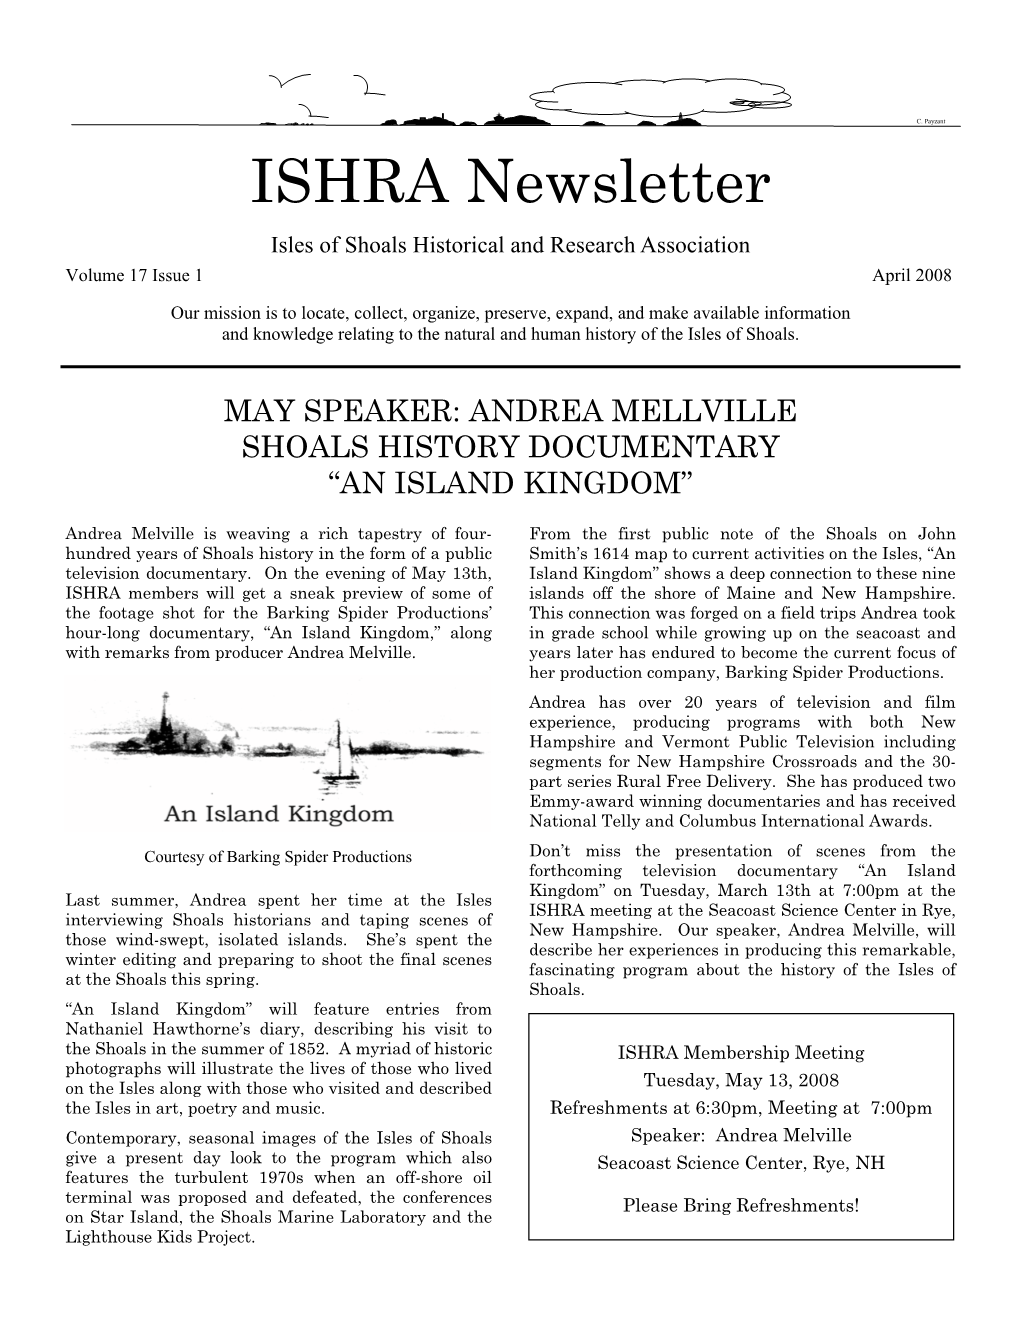 ISHRA Newsletter 4-08.Pub